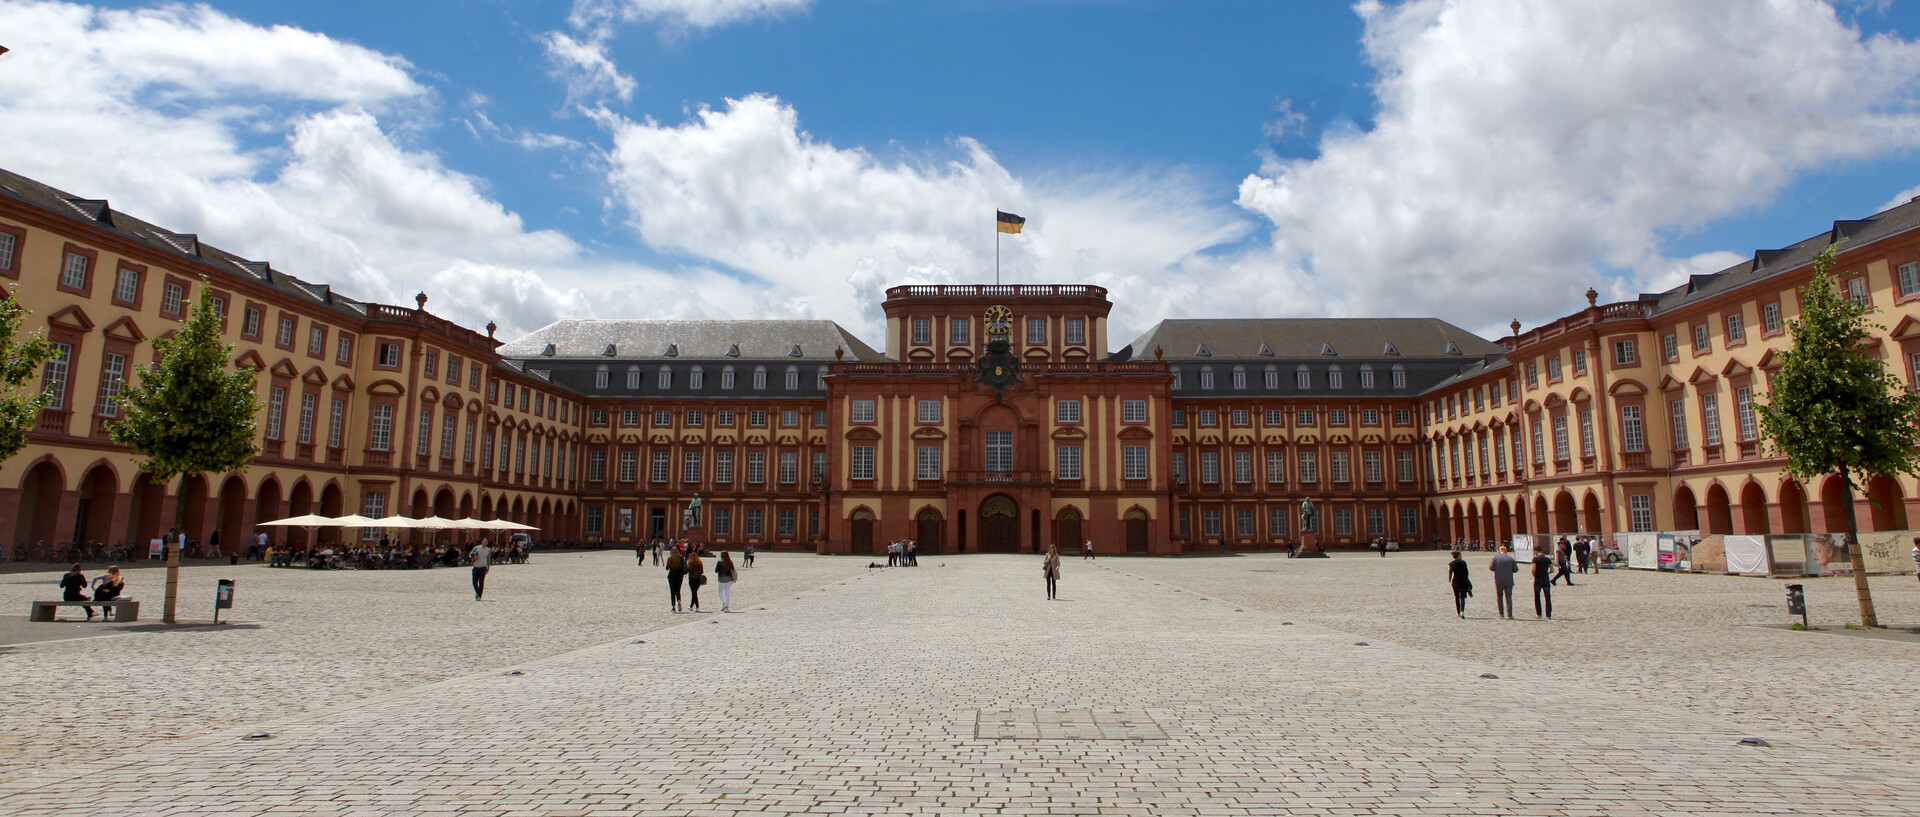 Das Mannheimer Schloss bei strahlendem Sonnenschein